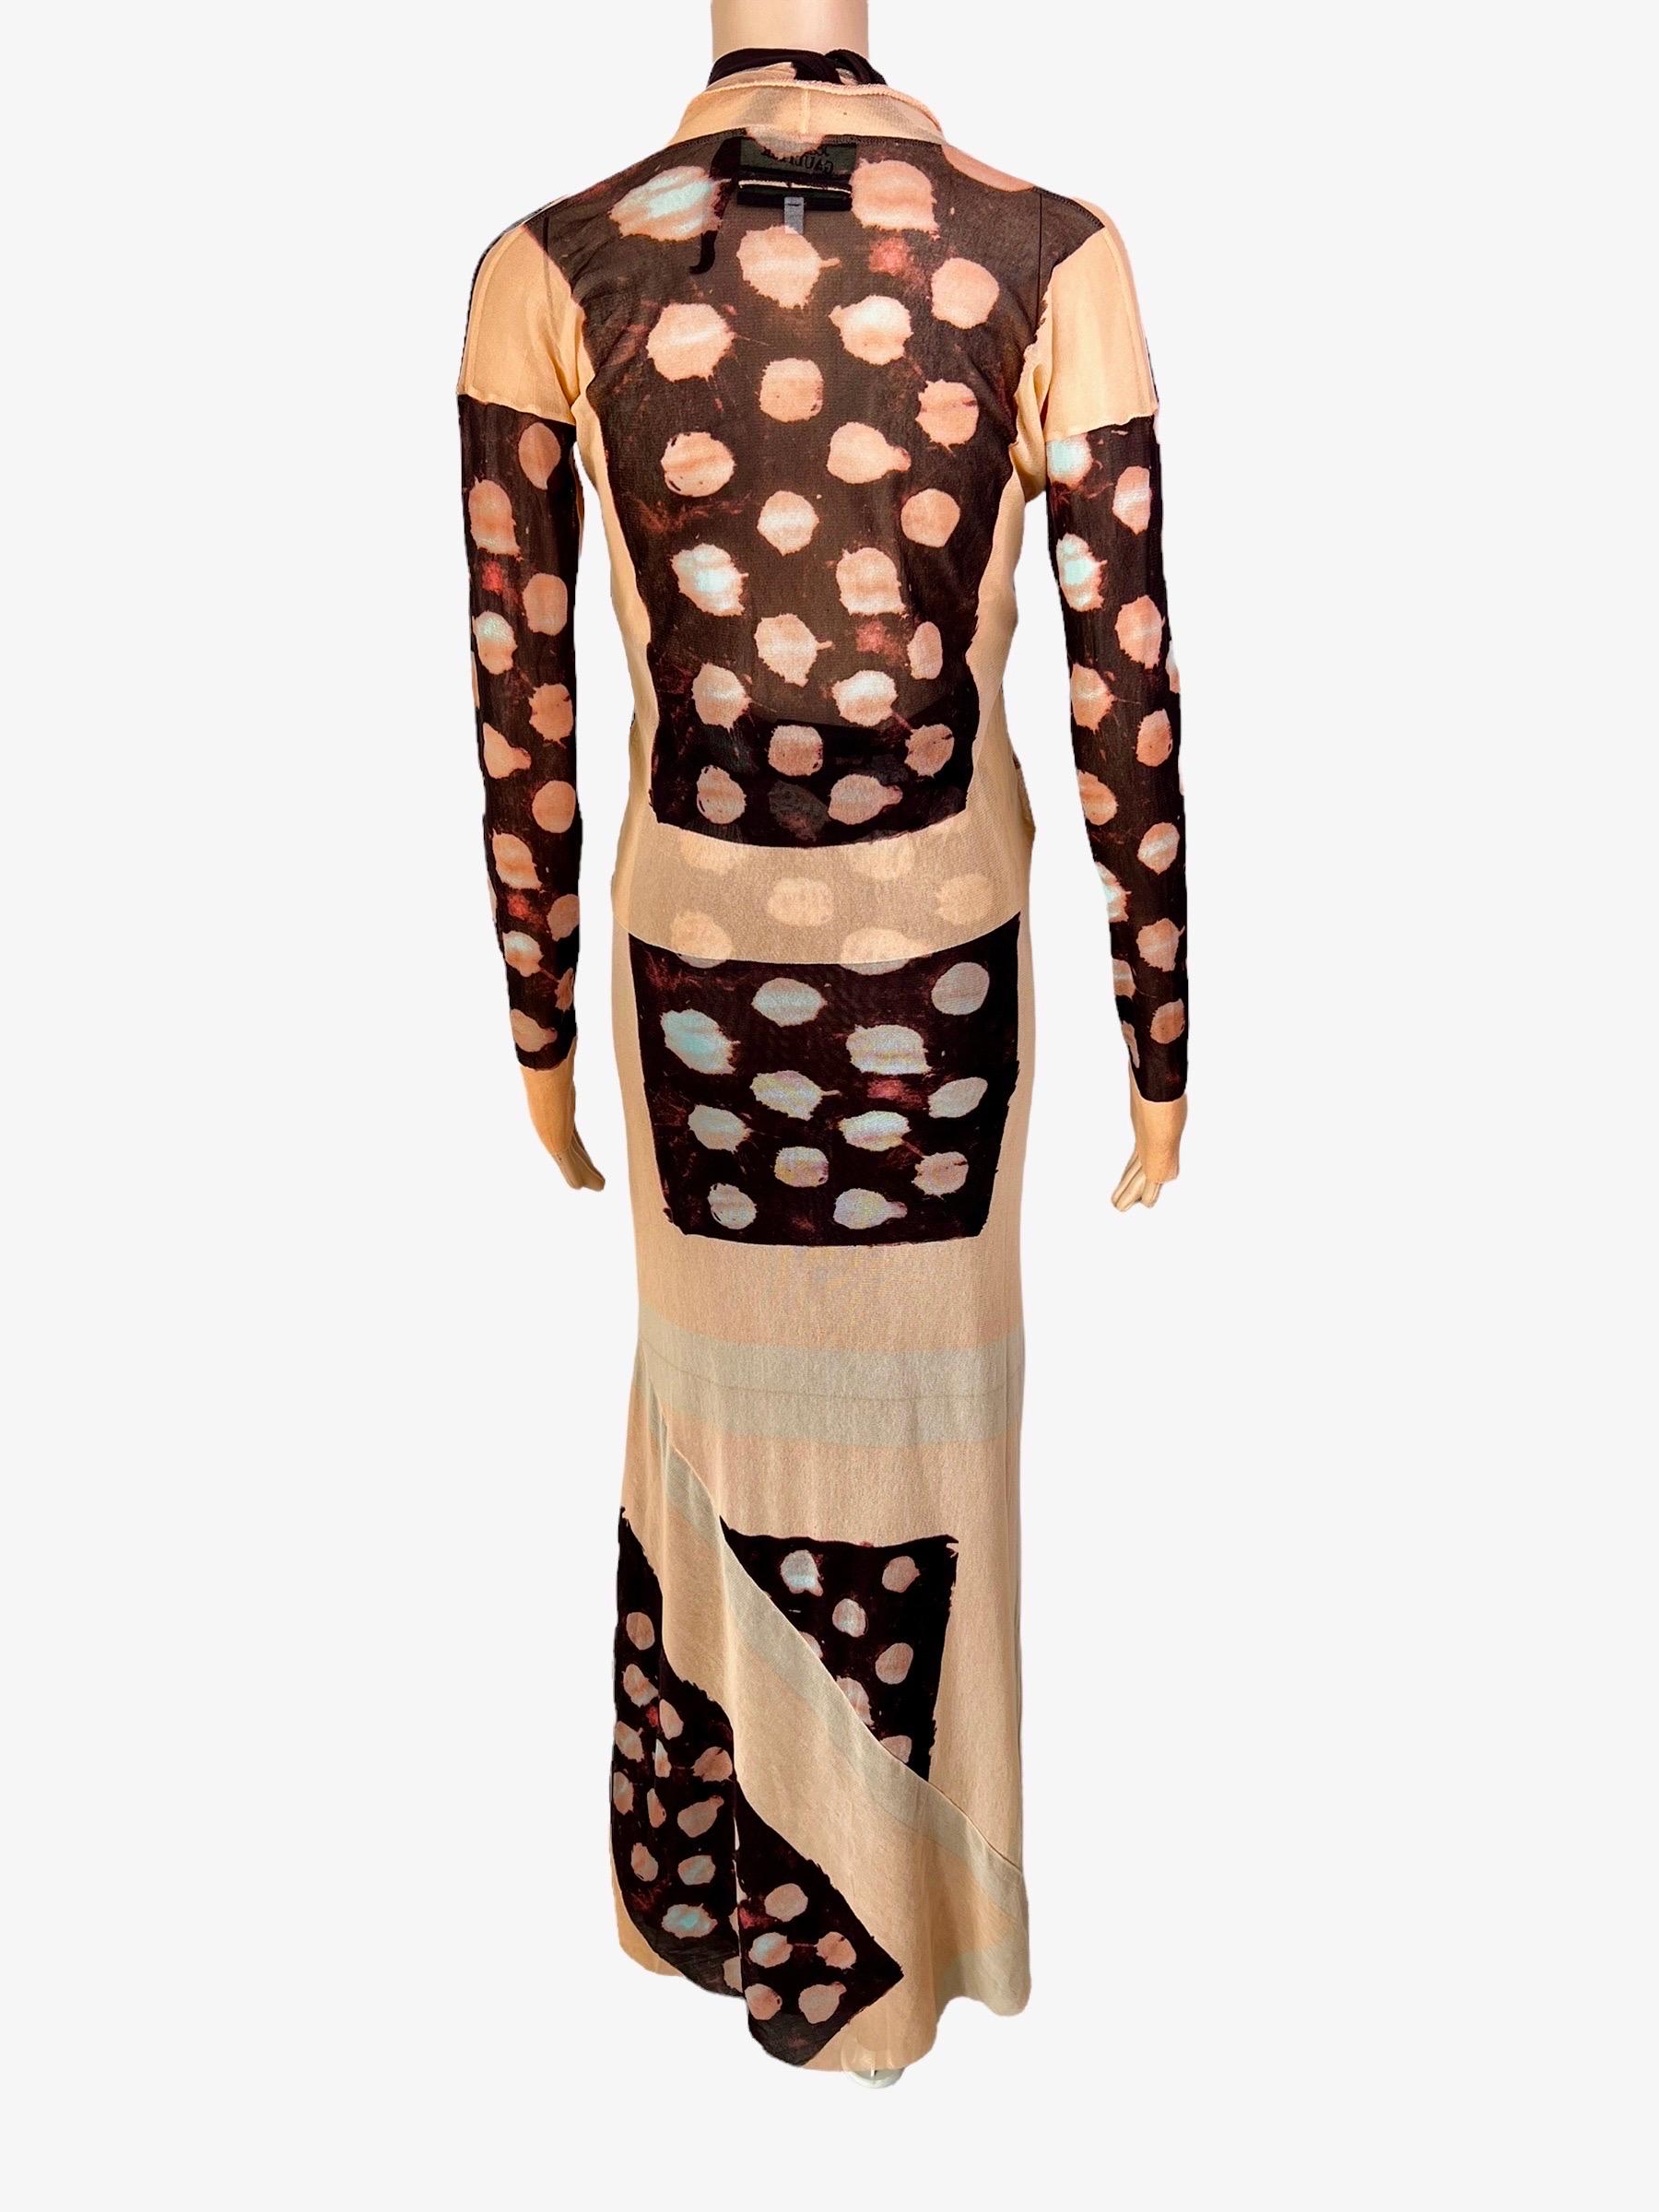 Brown Jean Paul Gaultier S/S 2001 Sheer Polka Dot Cardigan Top& Maxi Dress 2 Piece Set